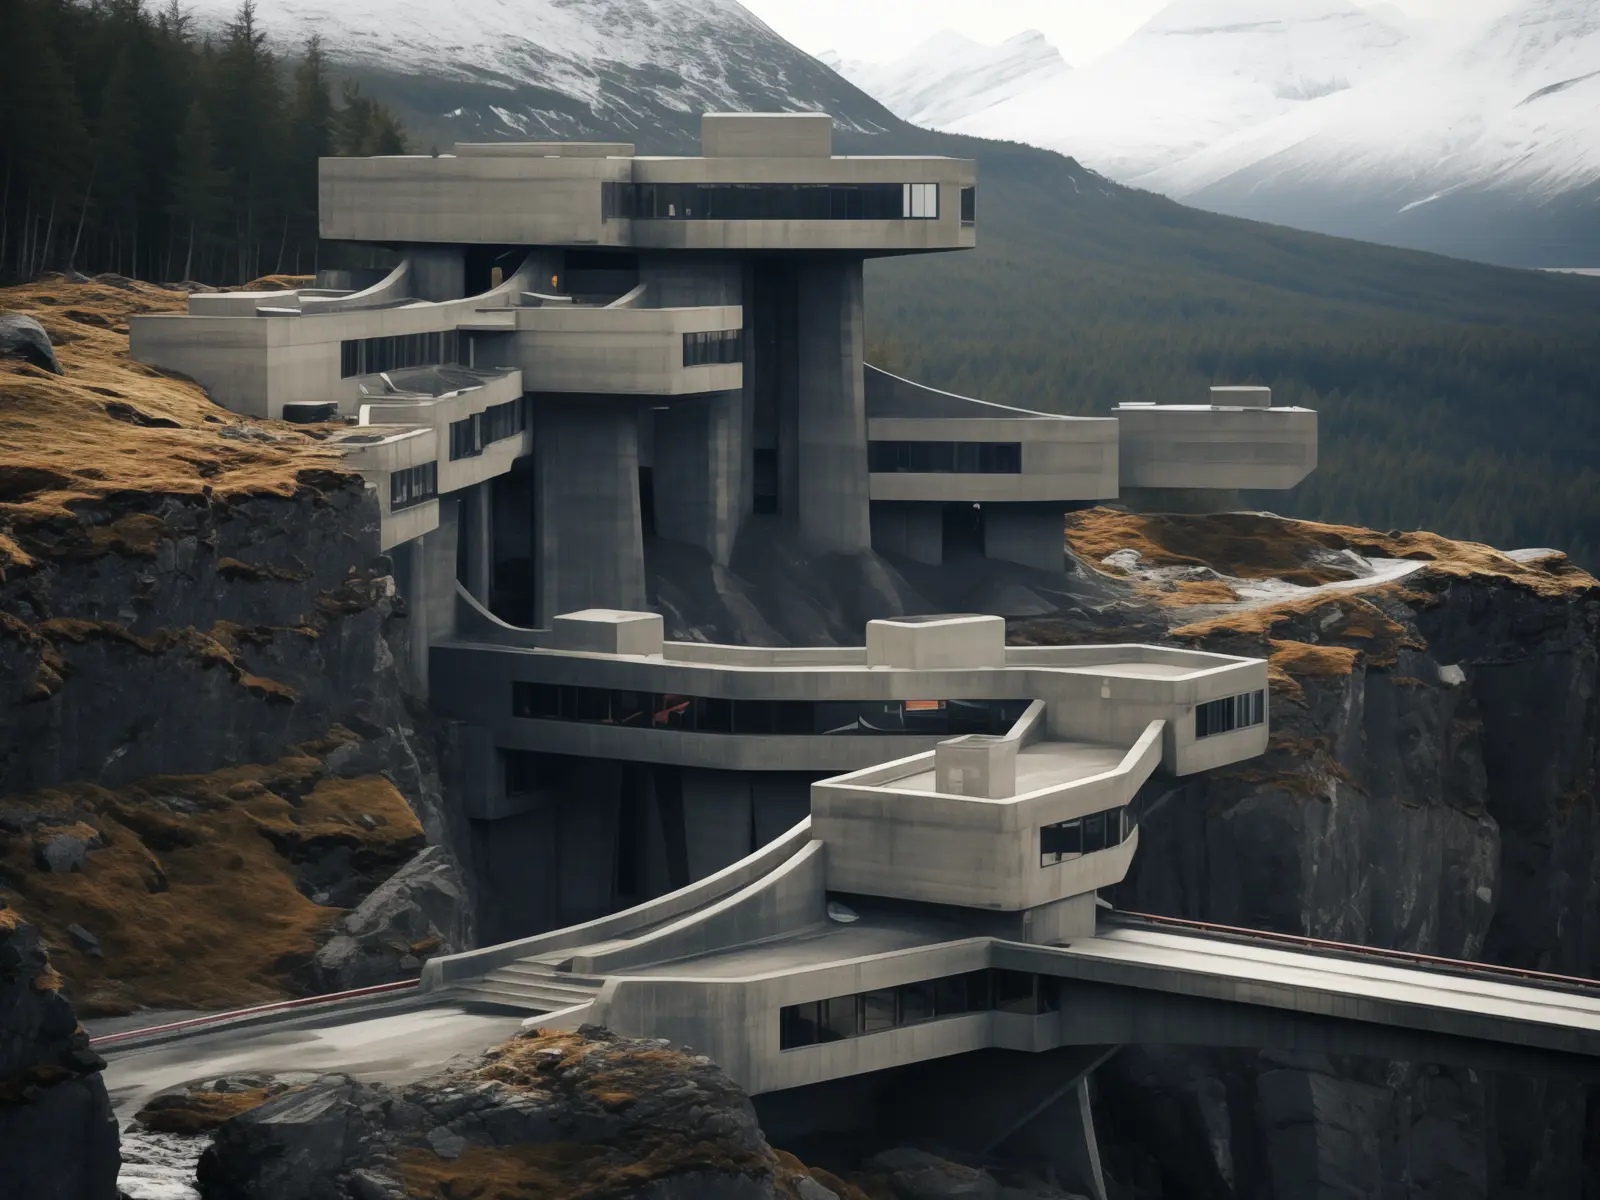 Visualisering av forestilt brutalistisk hotell i fjell landskap.